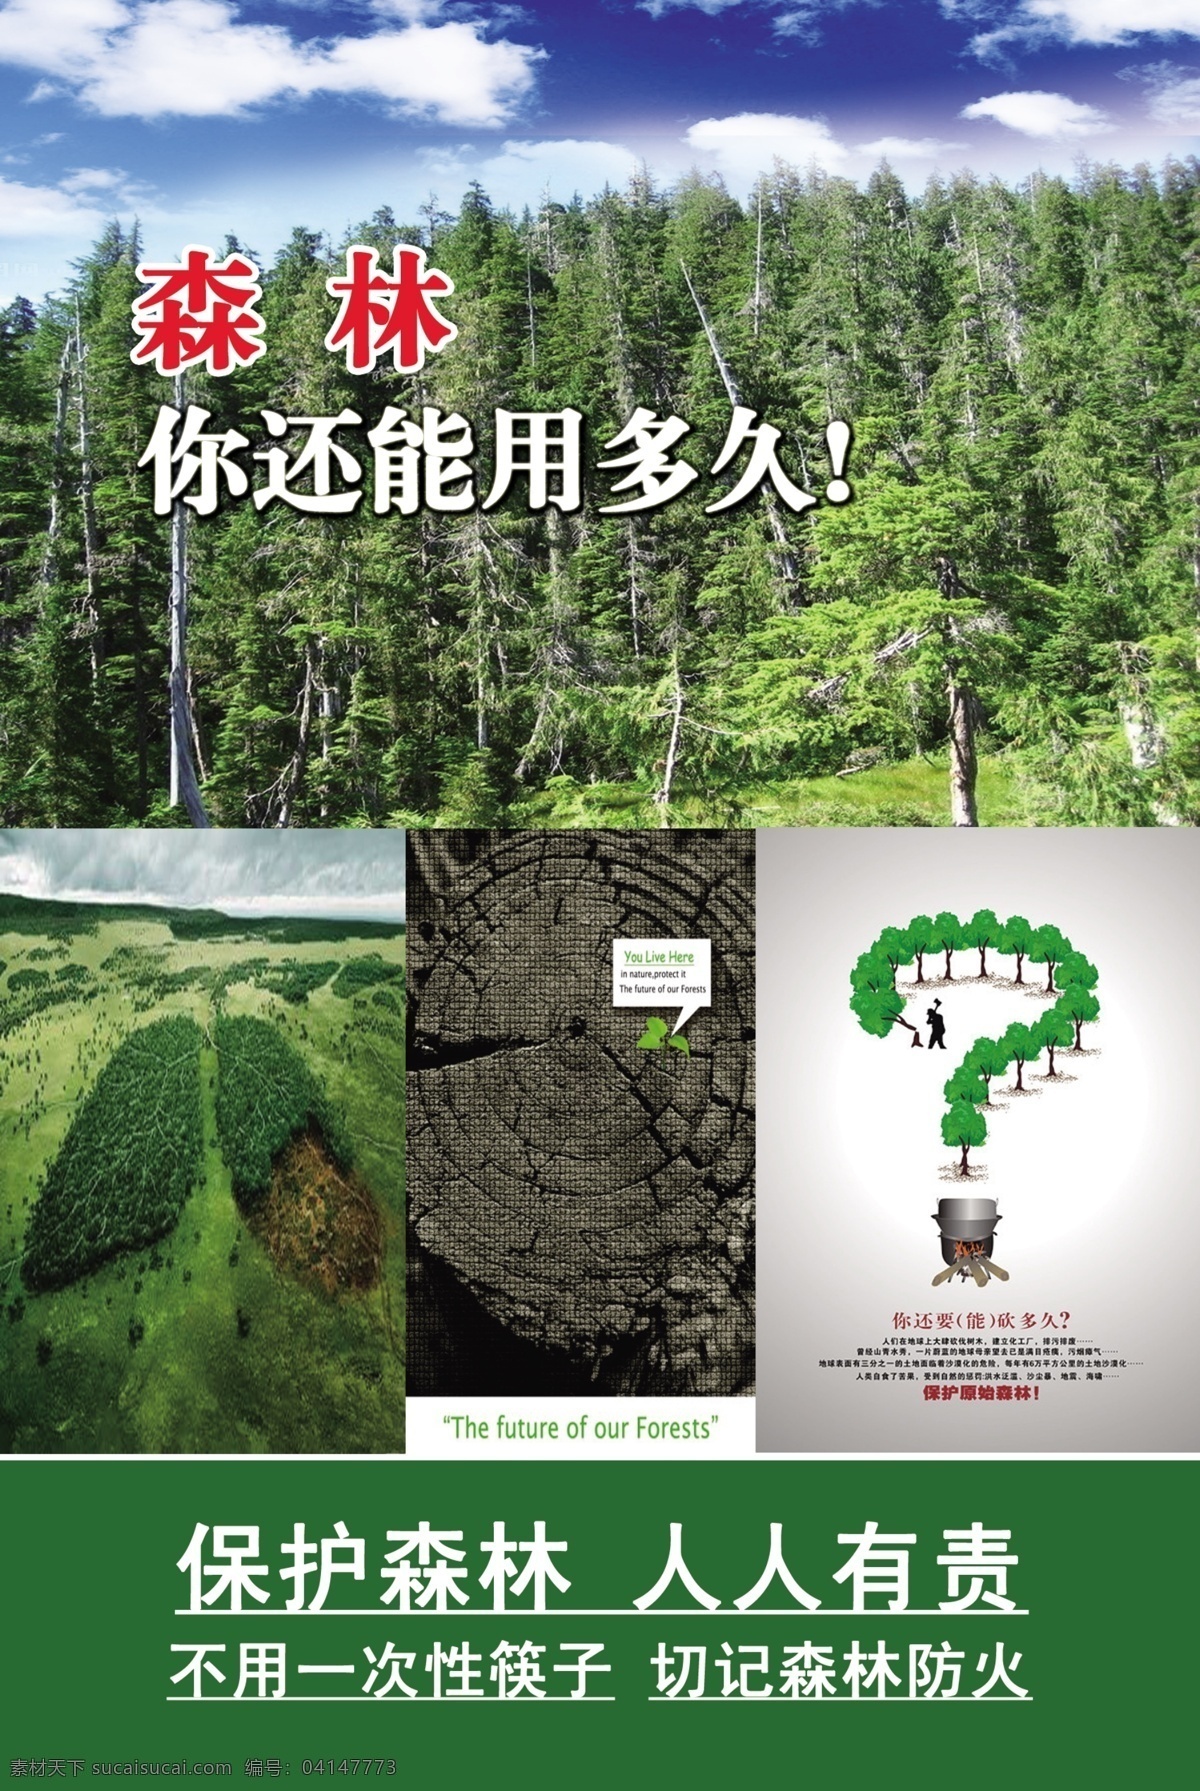 爱护 森林 保护森林 灯 广告设计模板 森林防火 问号 源文件 爱护森林 一次性筷子 其他海报设计